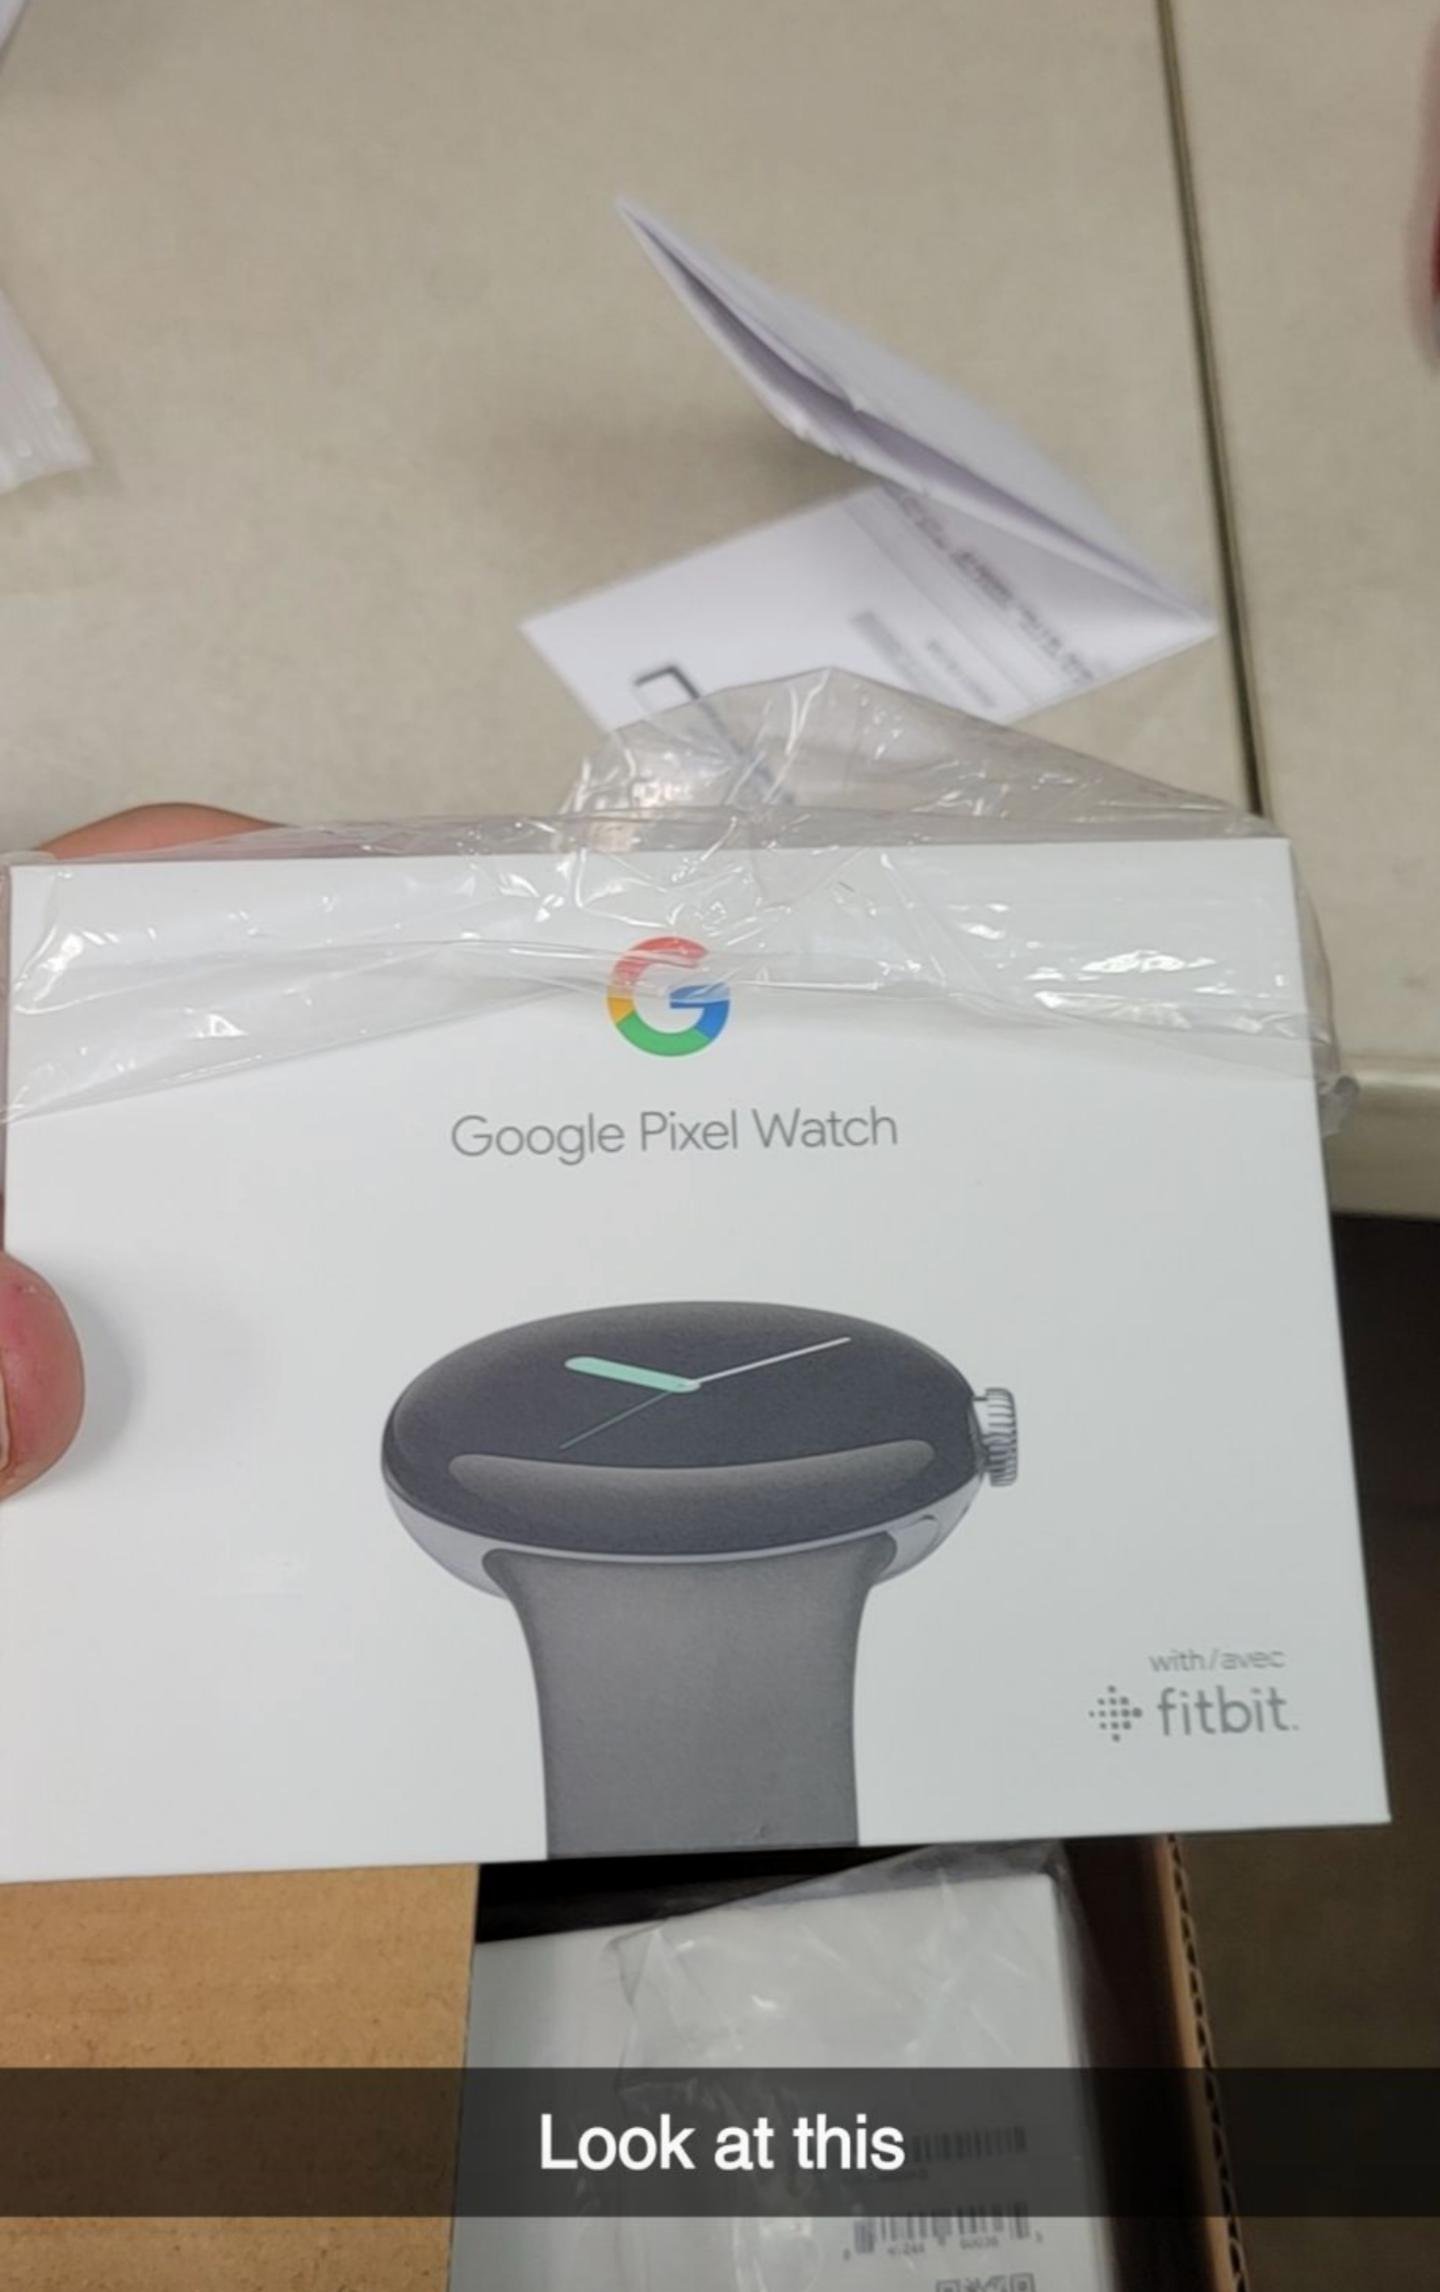 Google Pixel Watch Retail Box Leak